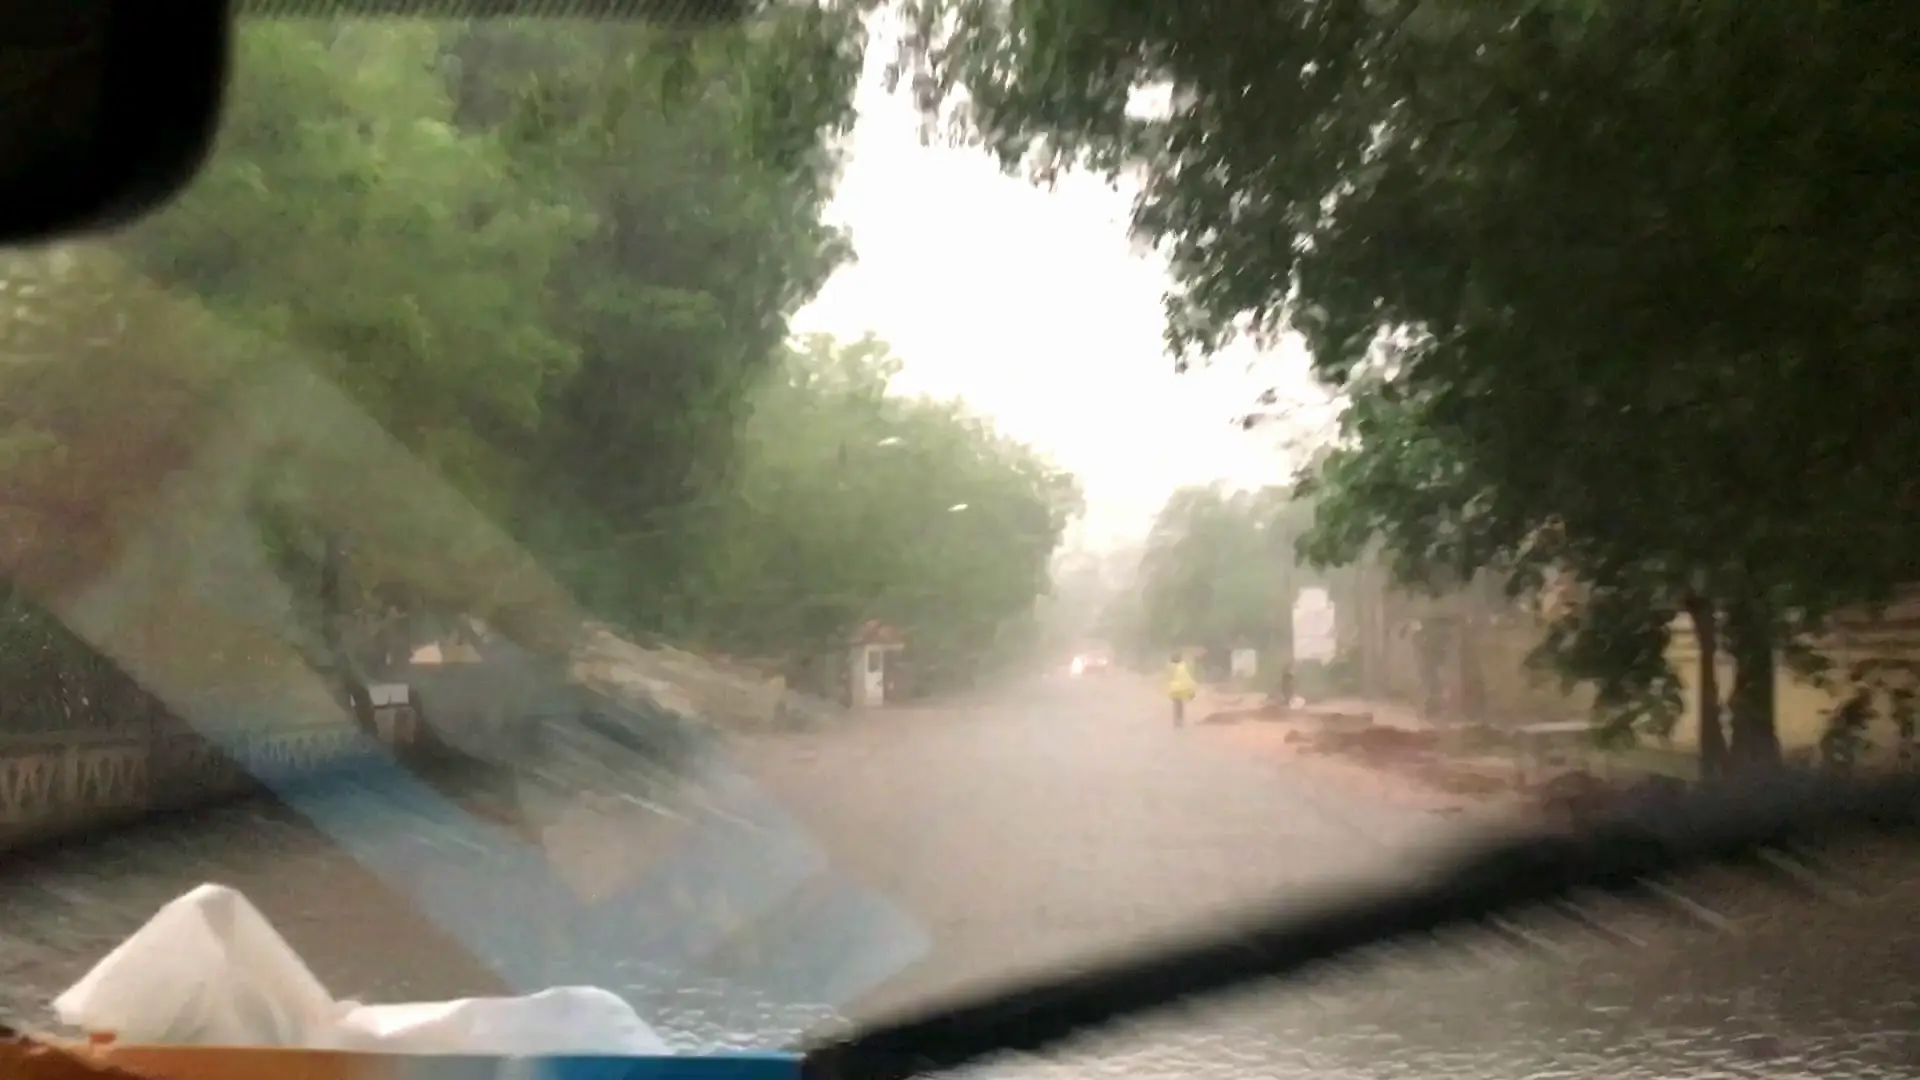 Pluie, Bamako, Mali. Jeudi 12 juillet 2018 à 7h49.